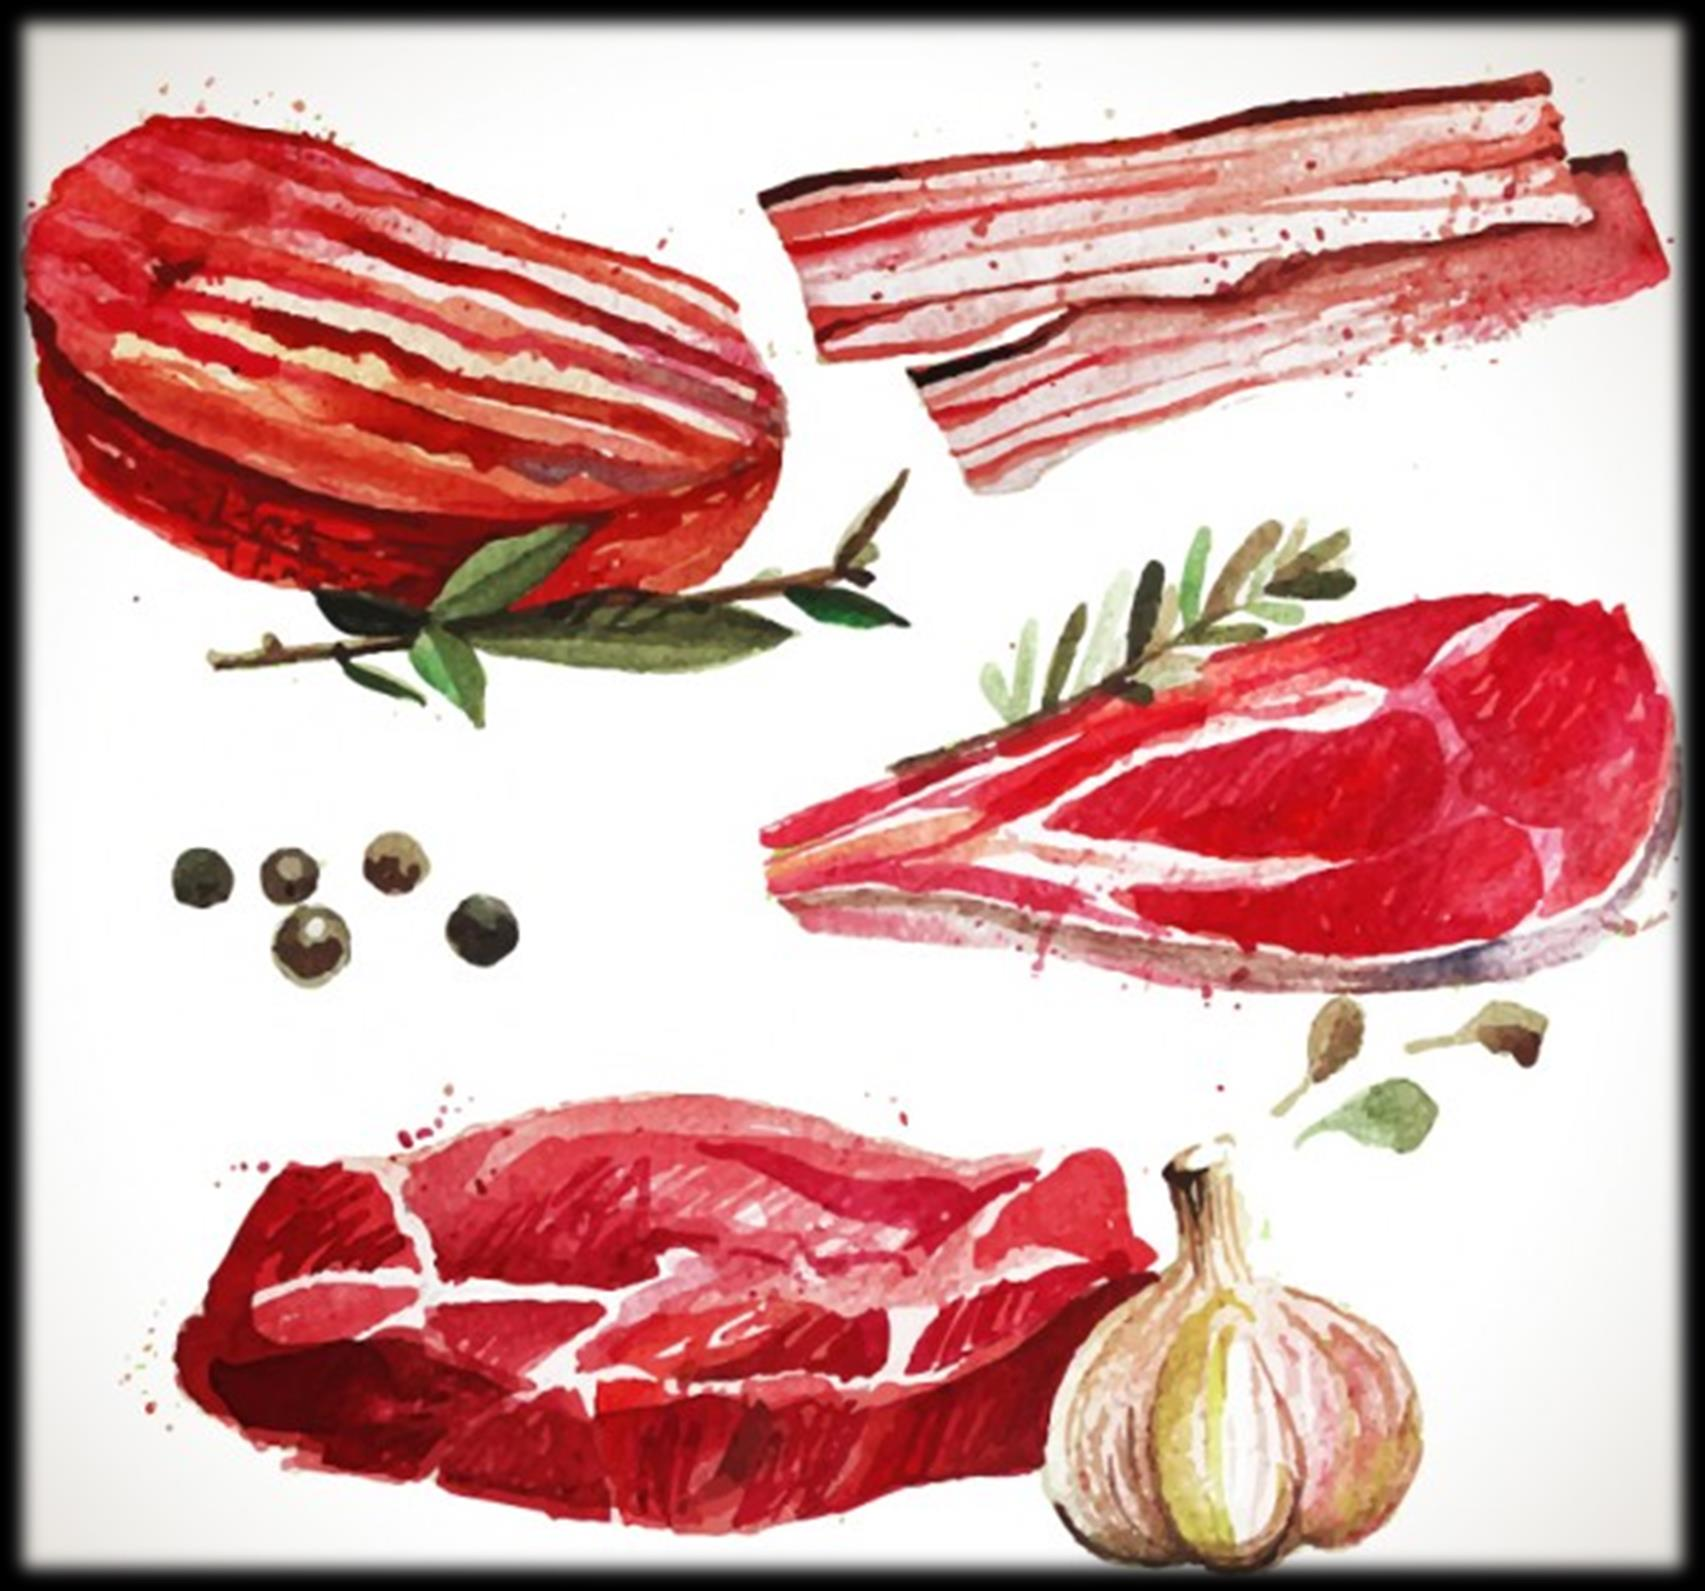 A húsok és húskészítmények jelenlegi helye a magyar lakossági fogyasztásban az OTÁP 2014 felmérése alapján FÉRFIAK NŐK Energiaprofil 17% (456